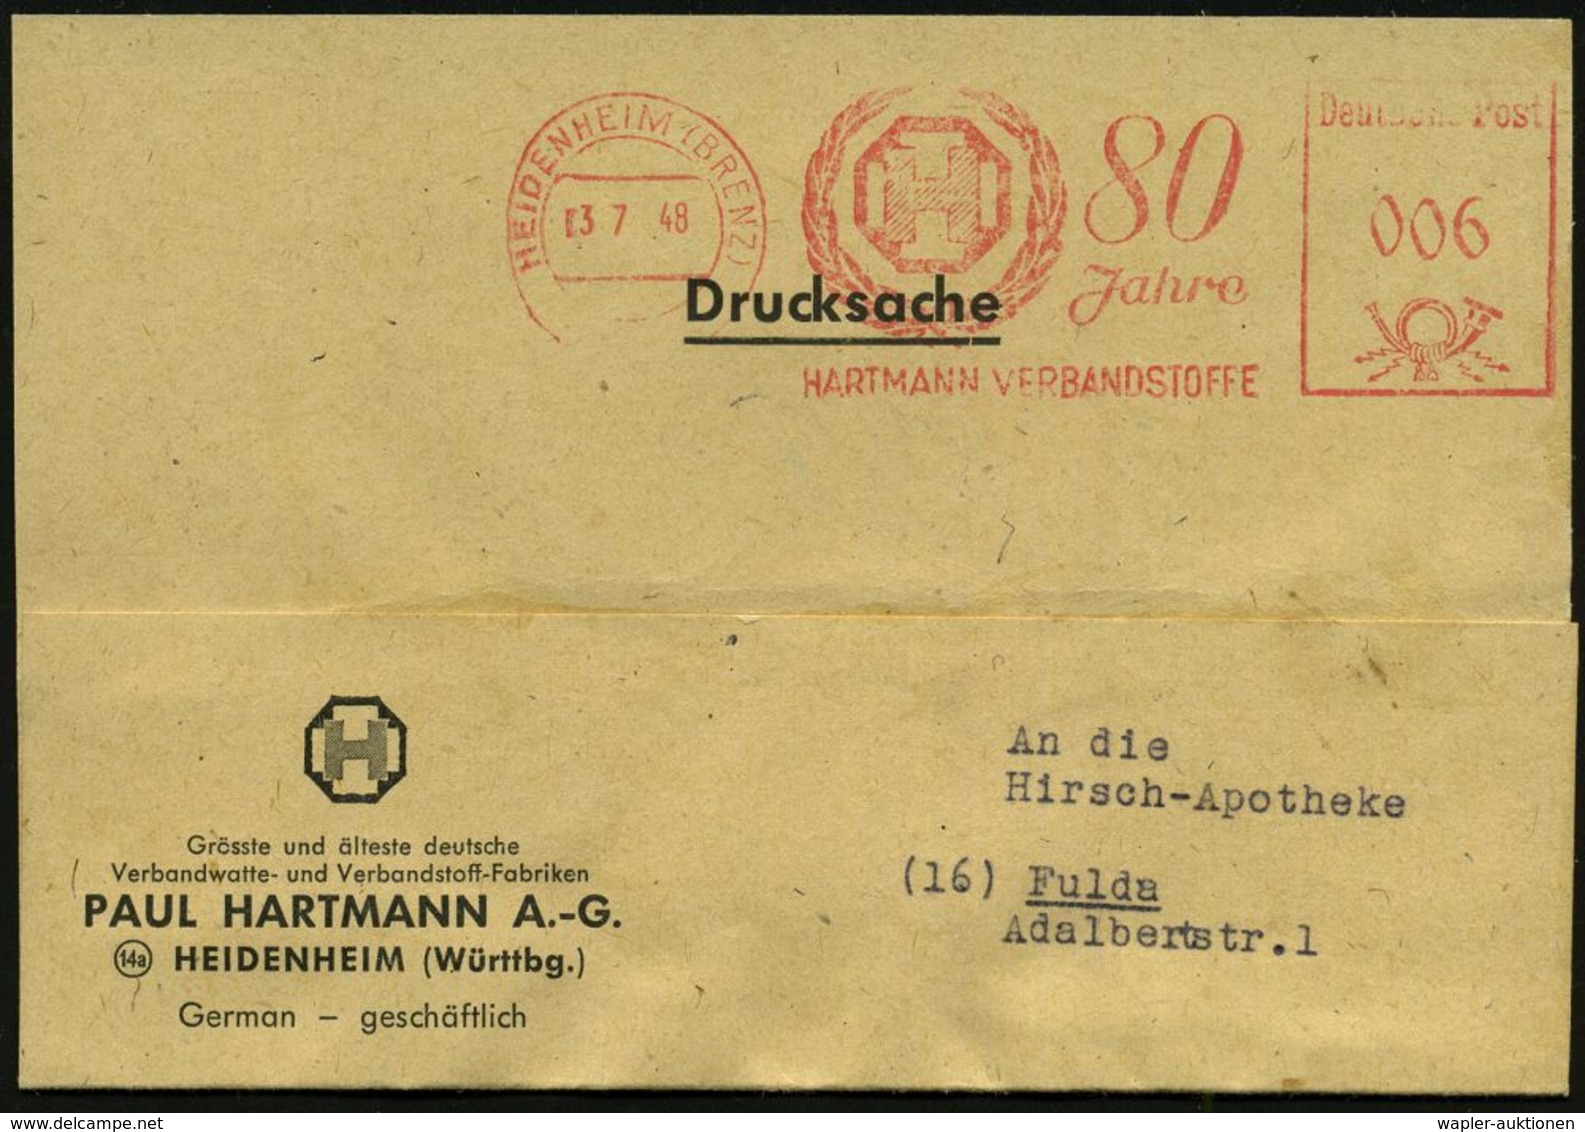 MEDIZINISCHE AUSRÜSTUNG & INSTRUMENTE : HEIDENHEIM (BRENZ)/ 80 Jahre/ HARTMANN VERBANDSSTOFFE 1948 (3.7.) Jubil.-AFS (Mo - Medizin